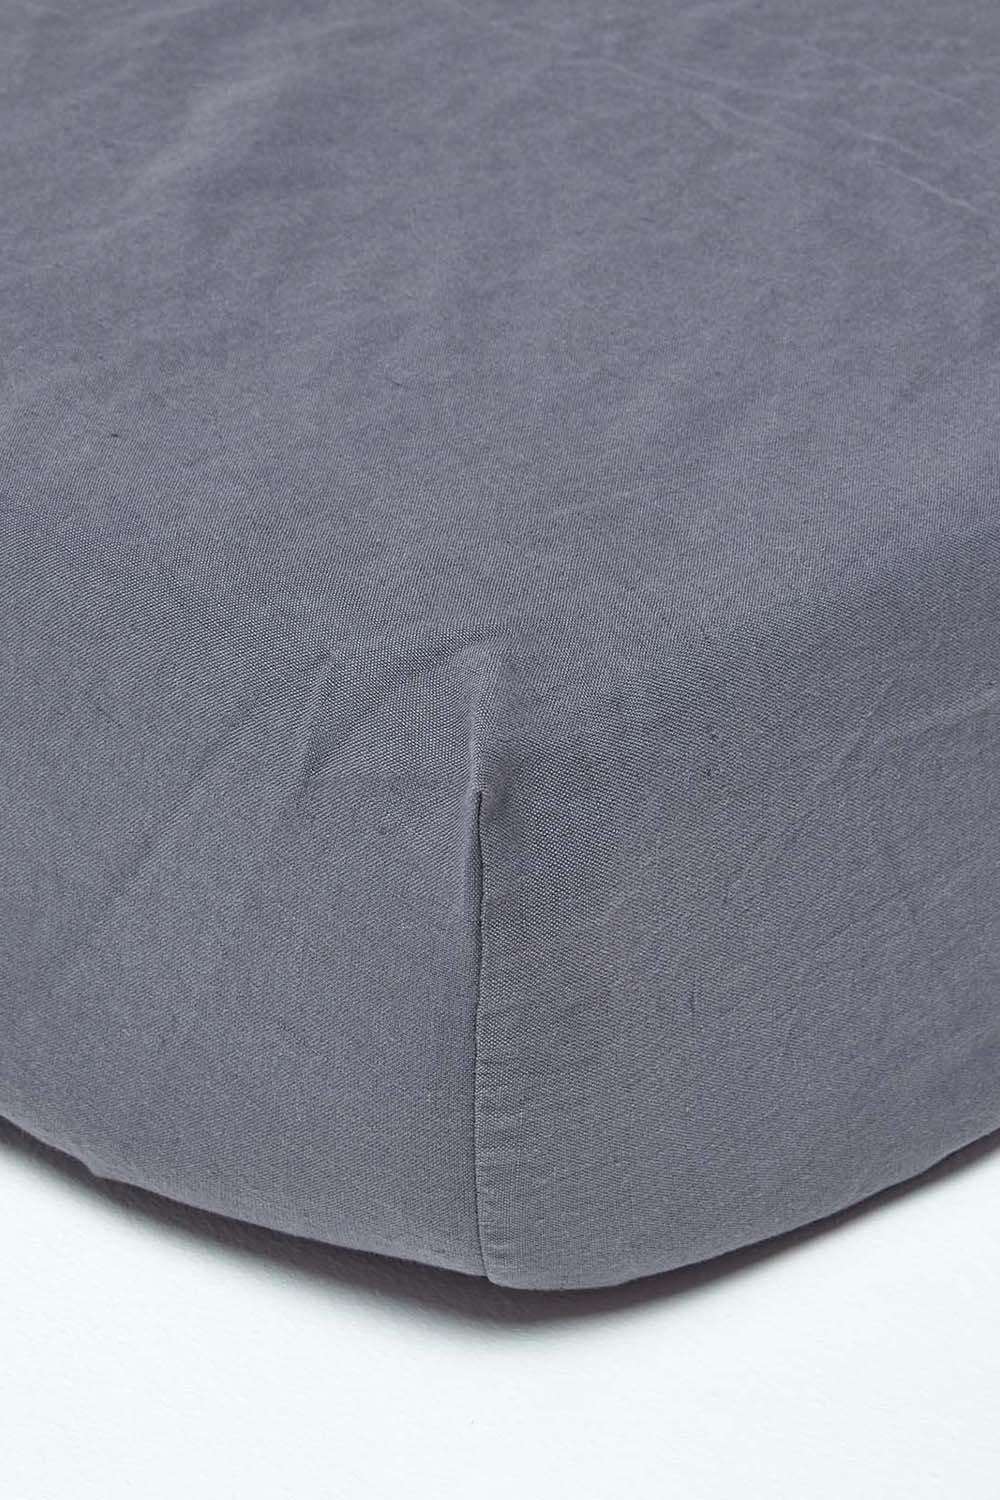 Luxury Soft Plain Linen Deep Fitted Sheet 18 inch Deep